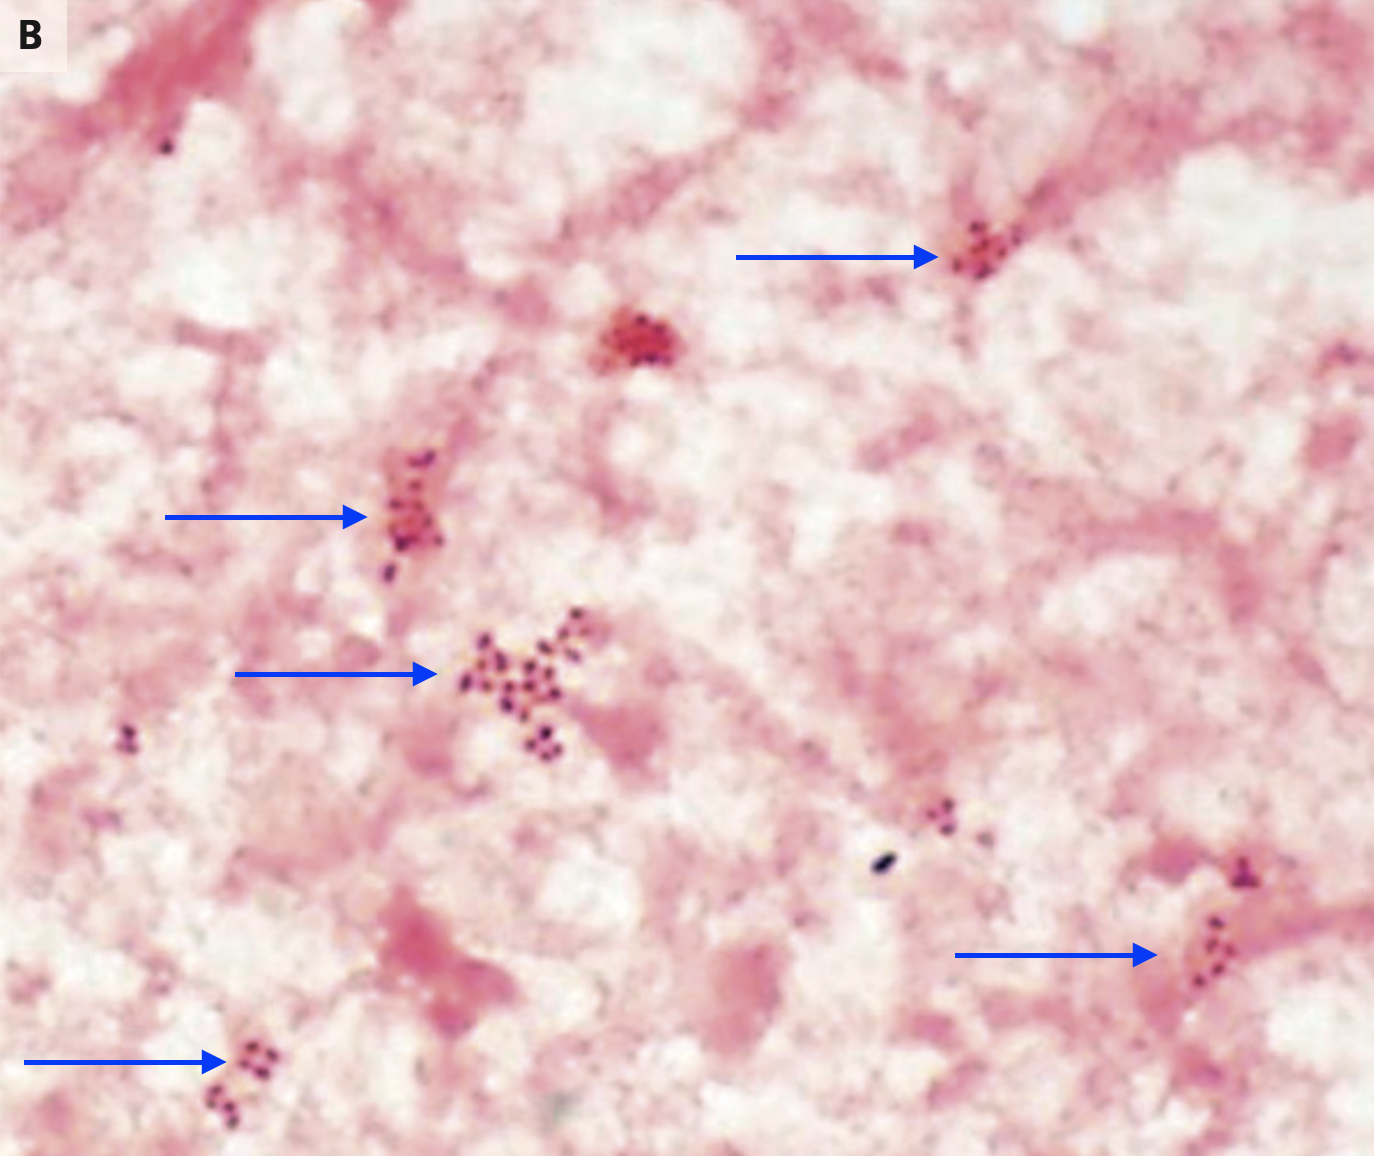 播散性淋病/散播性淋球菌感染 1——病例1【图片可能引起不适,请谨慎